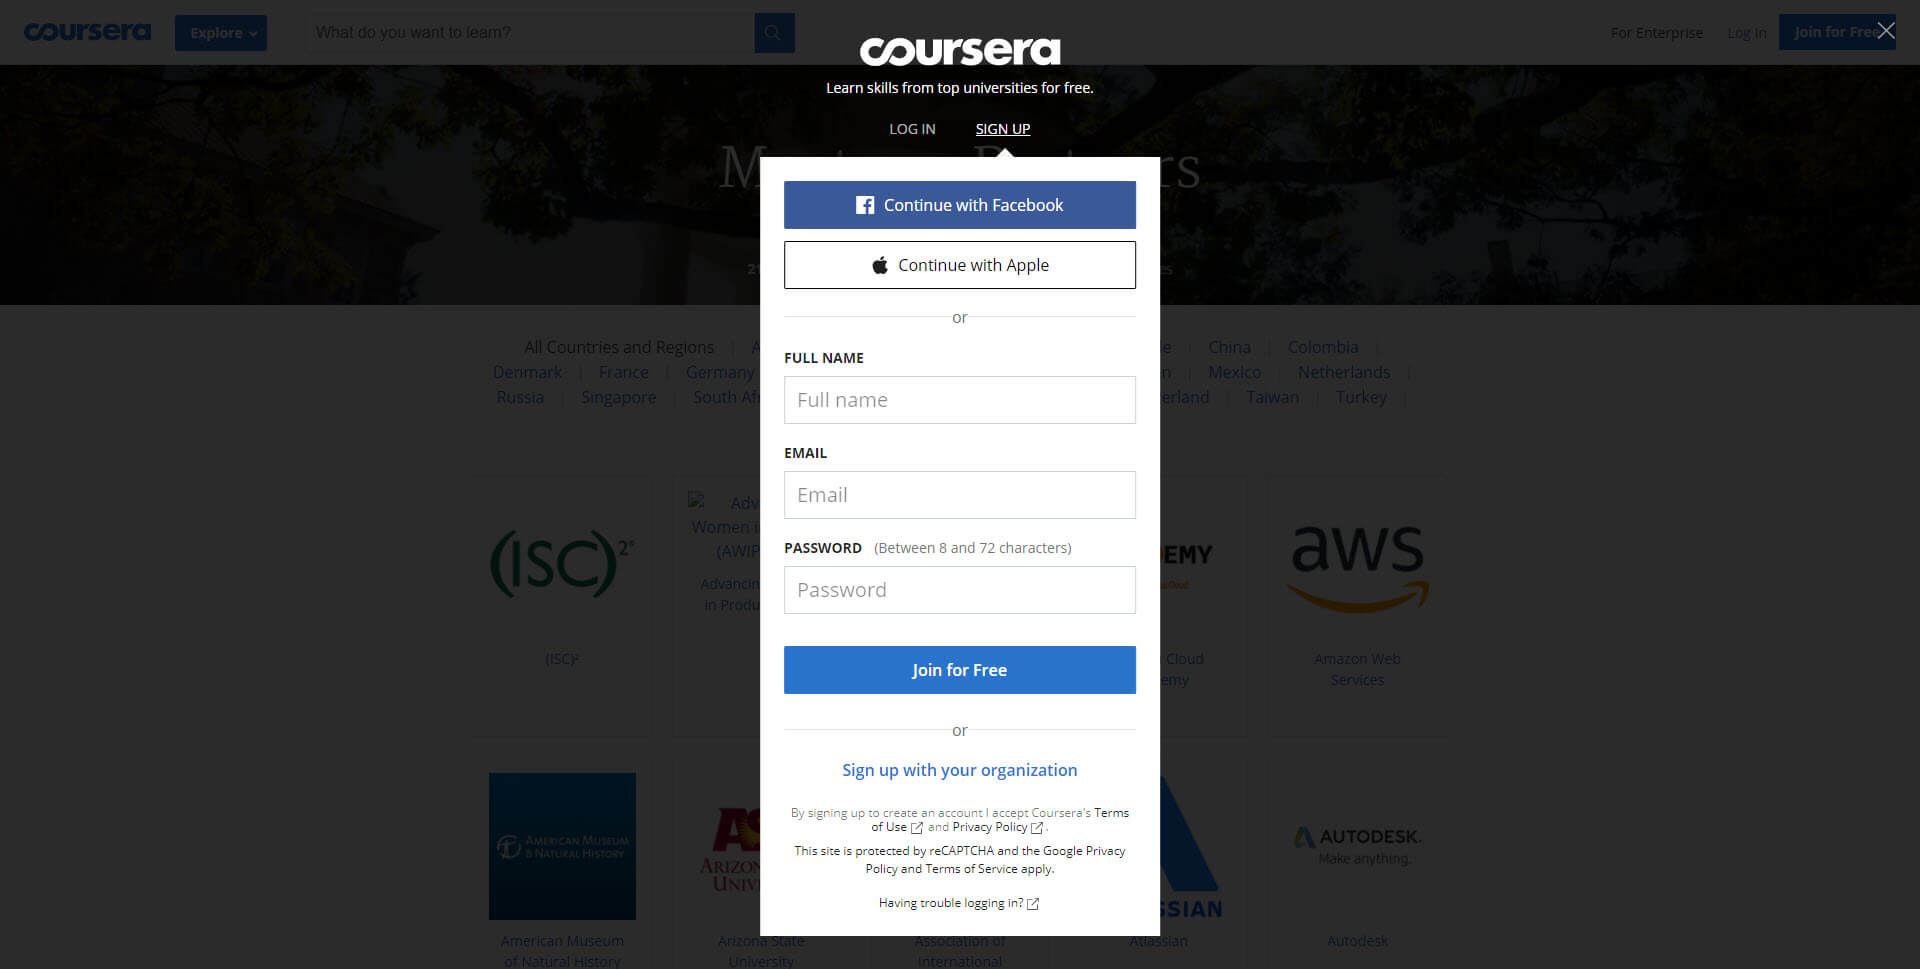 التسجيل في كورسيرا Coursera